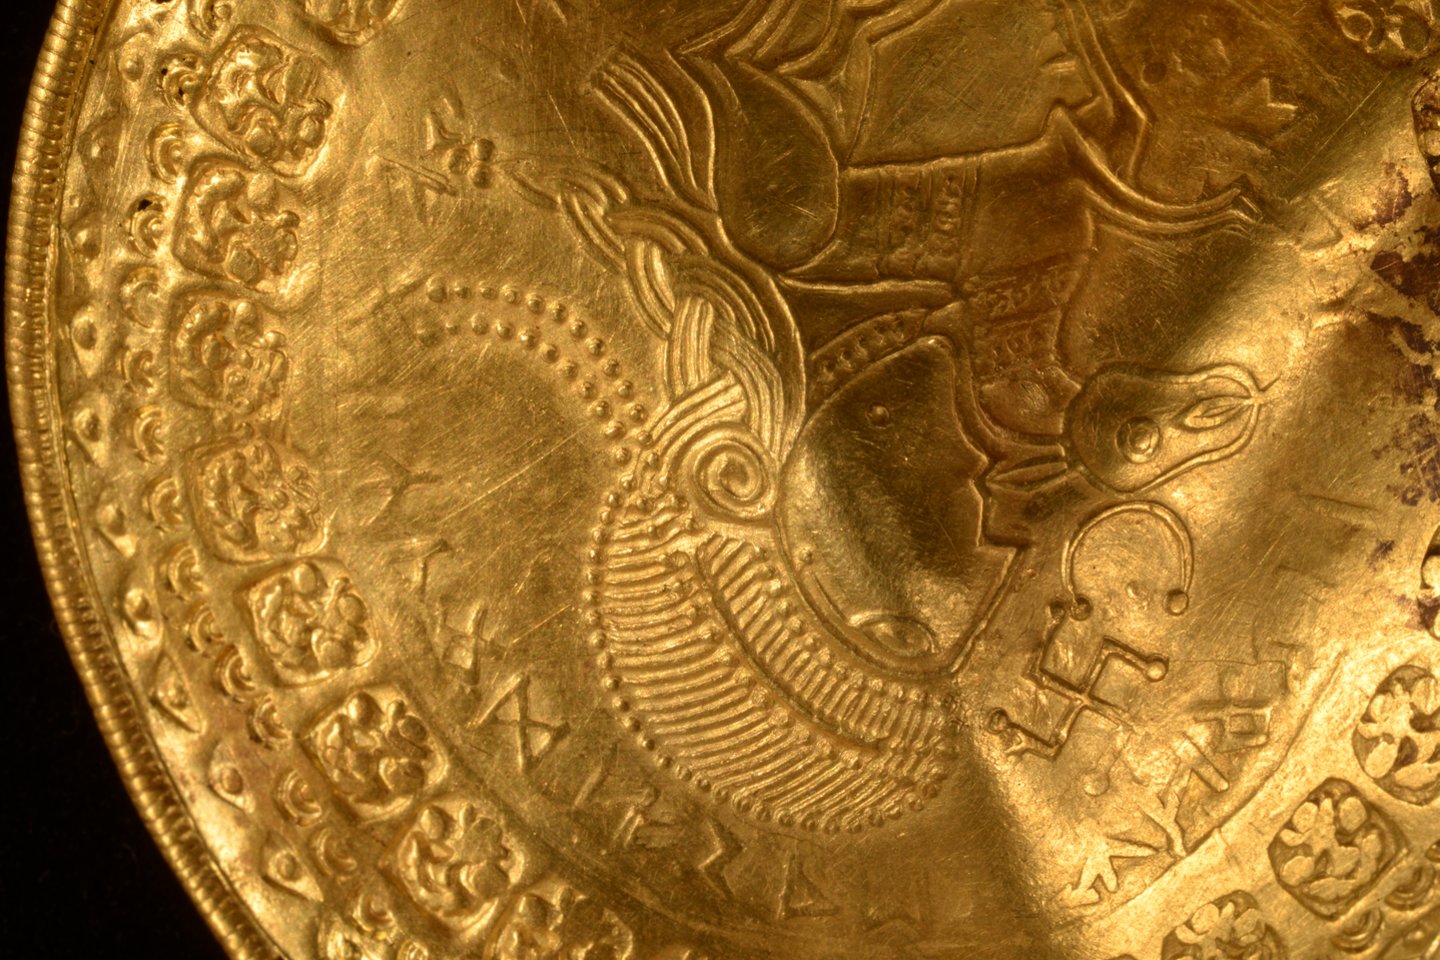  1500 metų senumo radinį sudaro beveik kilogramas aukso – įskaitant didelius, lėkštės dydžio medalionus, vadinamus brakteatais.<br> Veljės muziejaus nuotr.